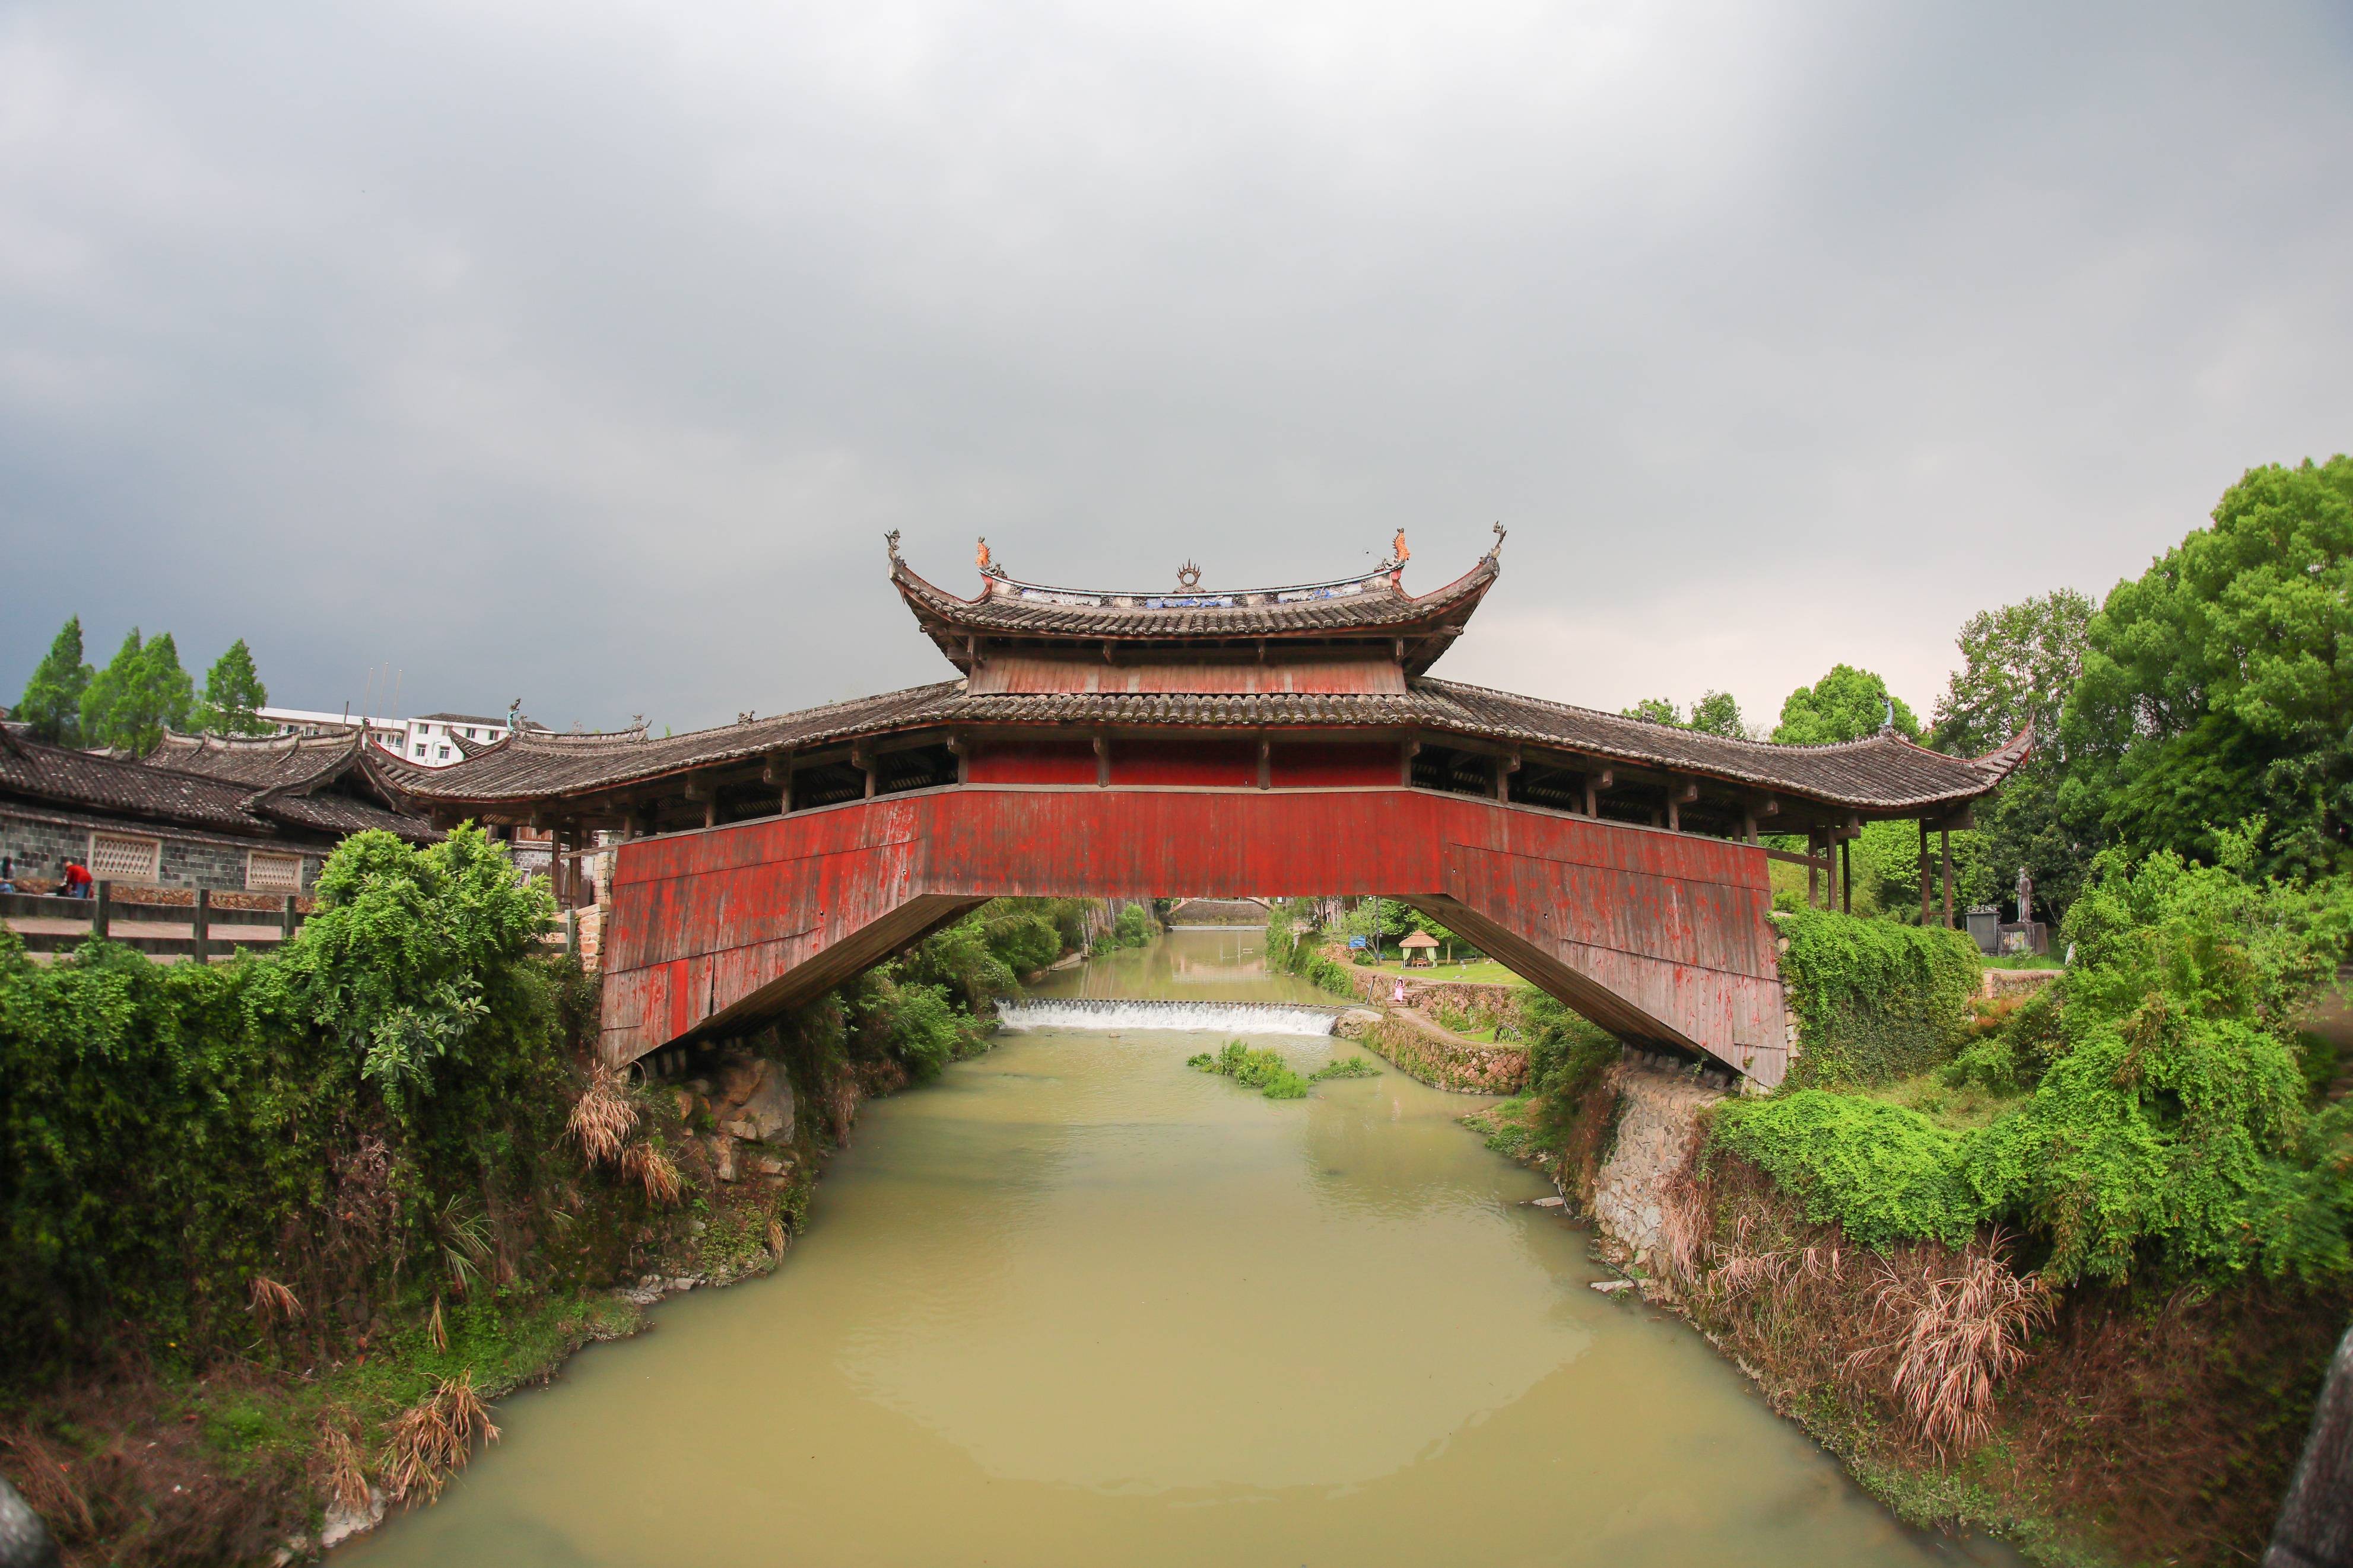 在温州泰顺,看廊桥,泡氡泉,细品旅途中的美好